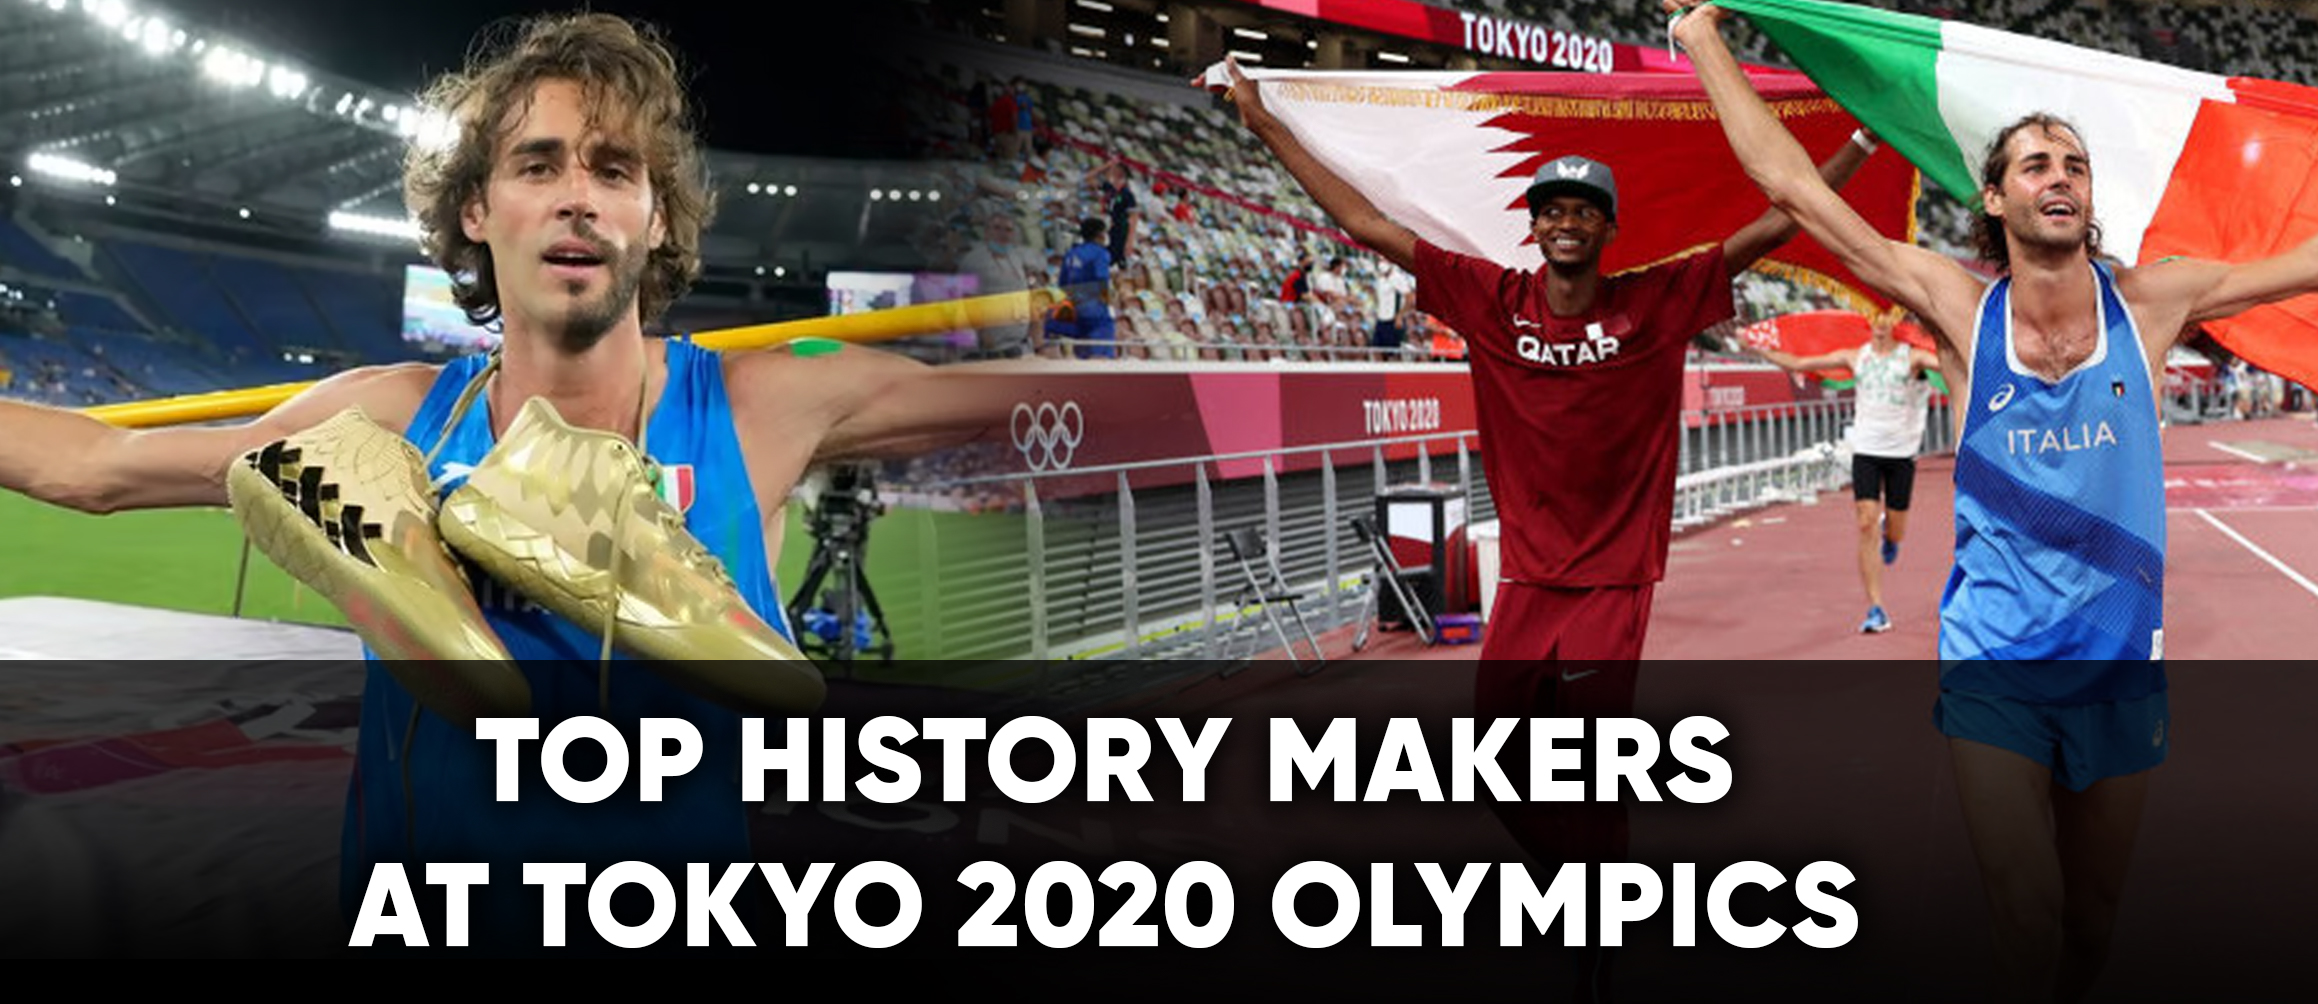 Top history makers at Tokyo 2020 Olympics